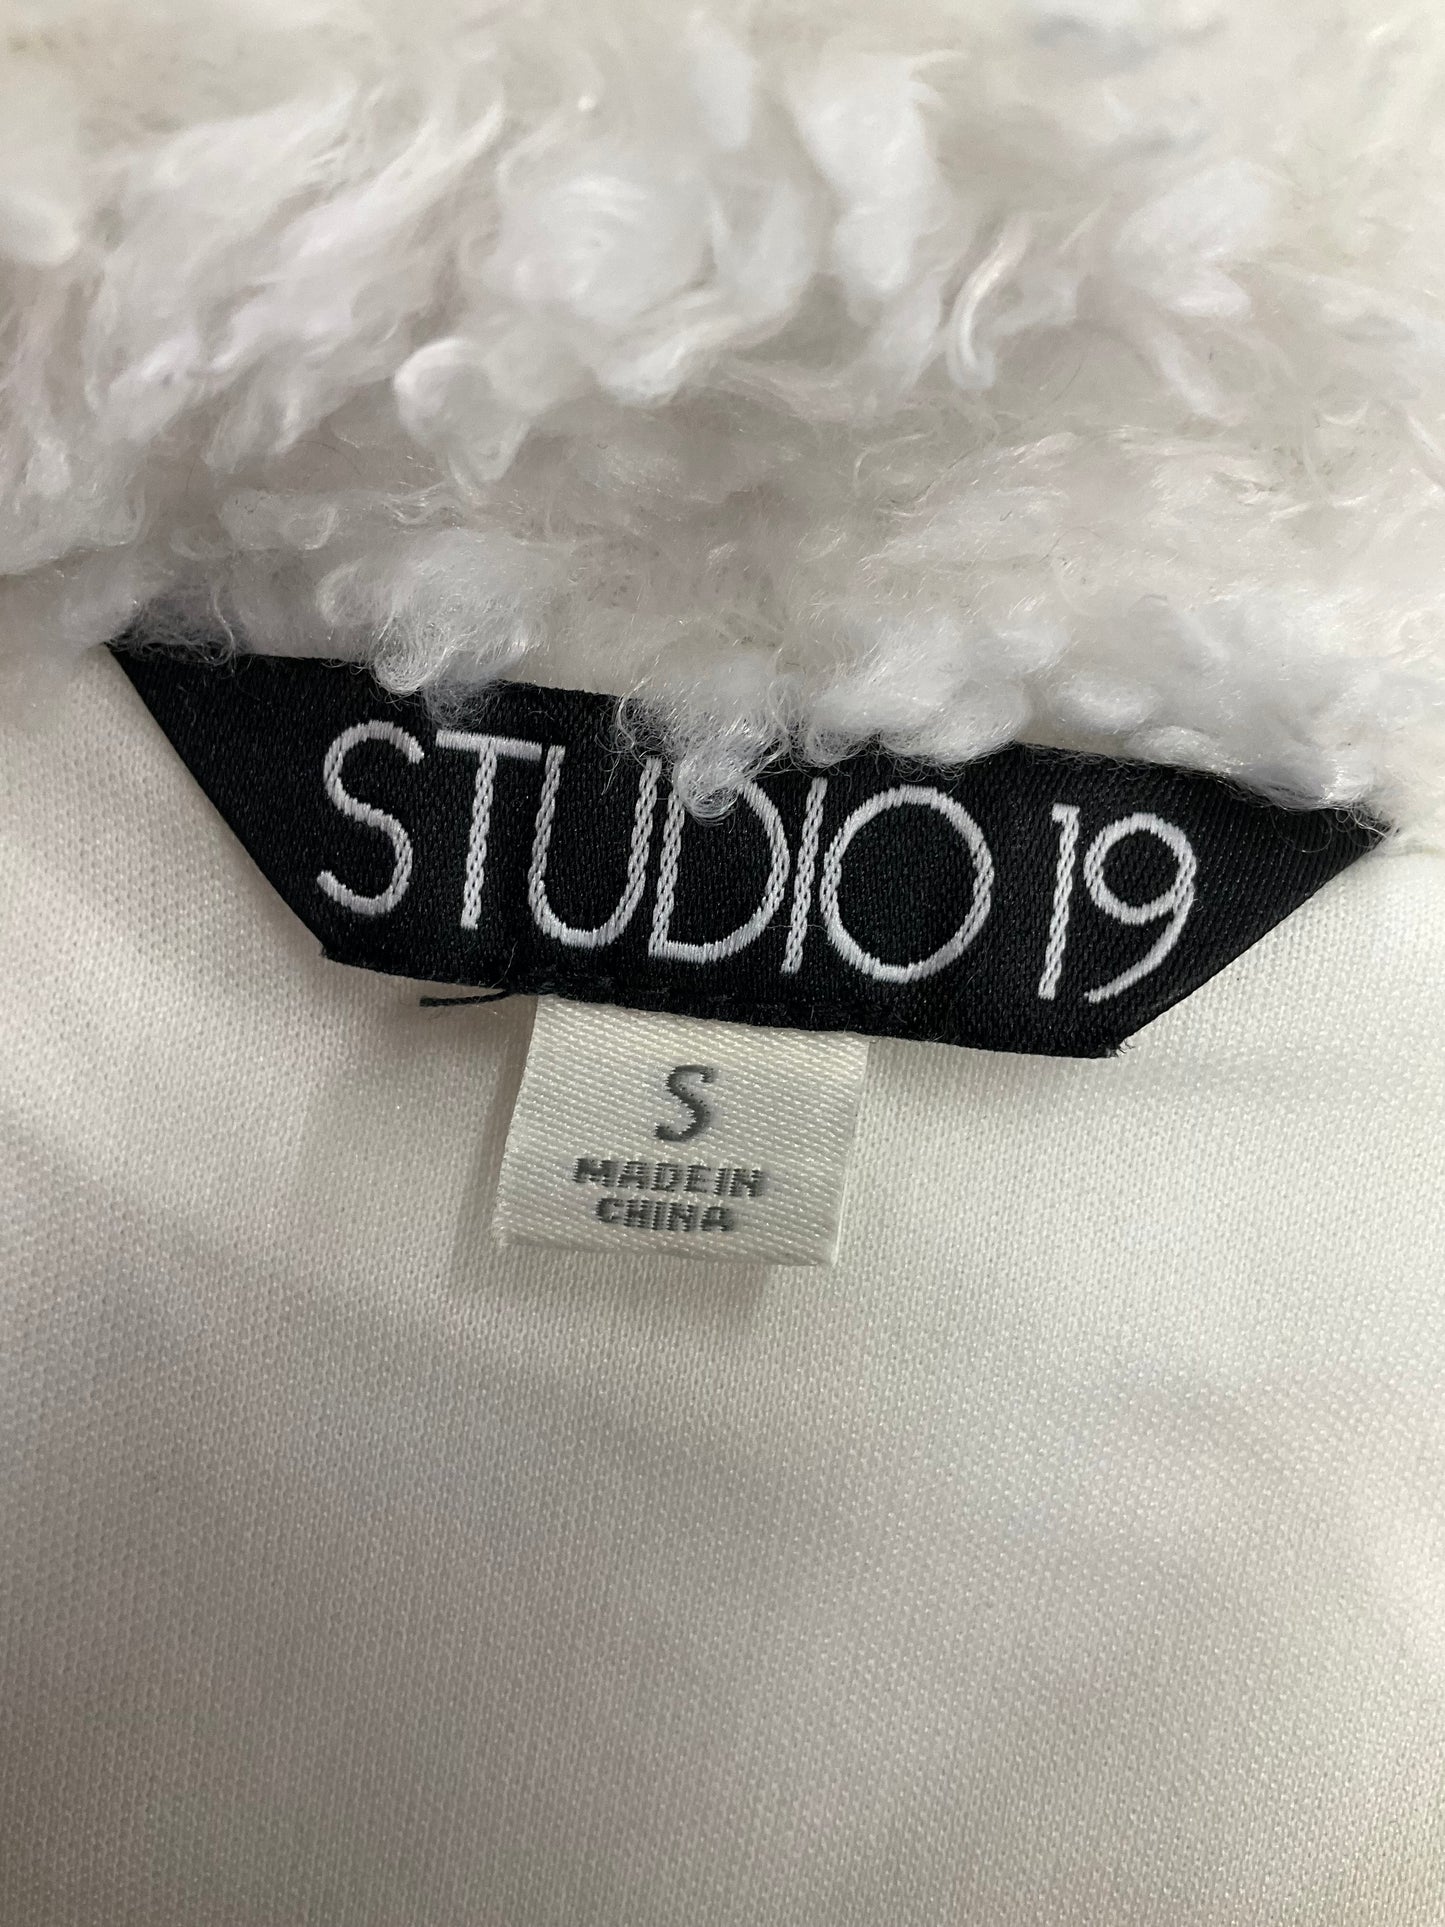 White Jacket Faux Fur & Sherpa Studio 1940, Size S